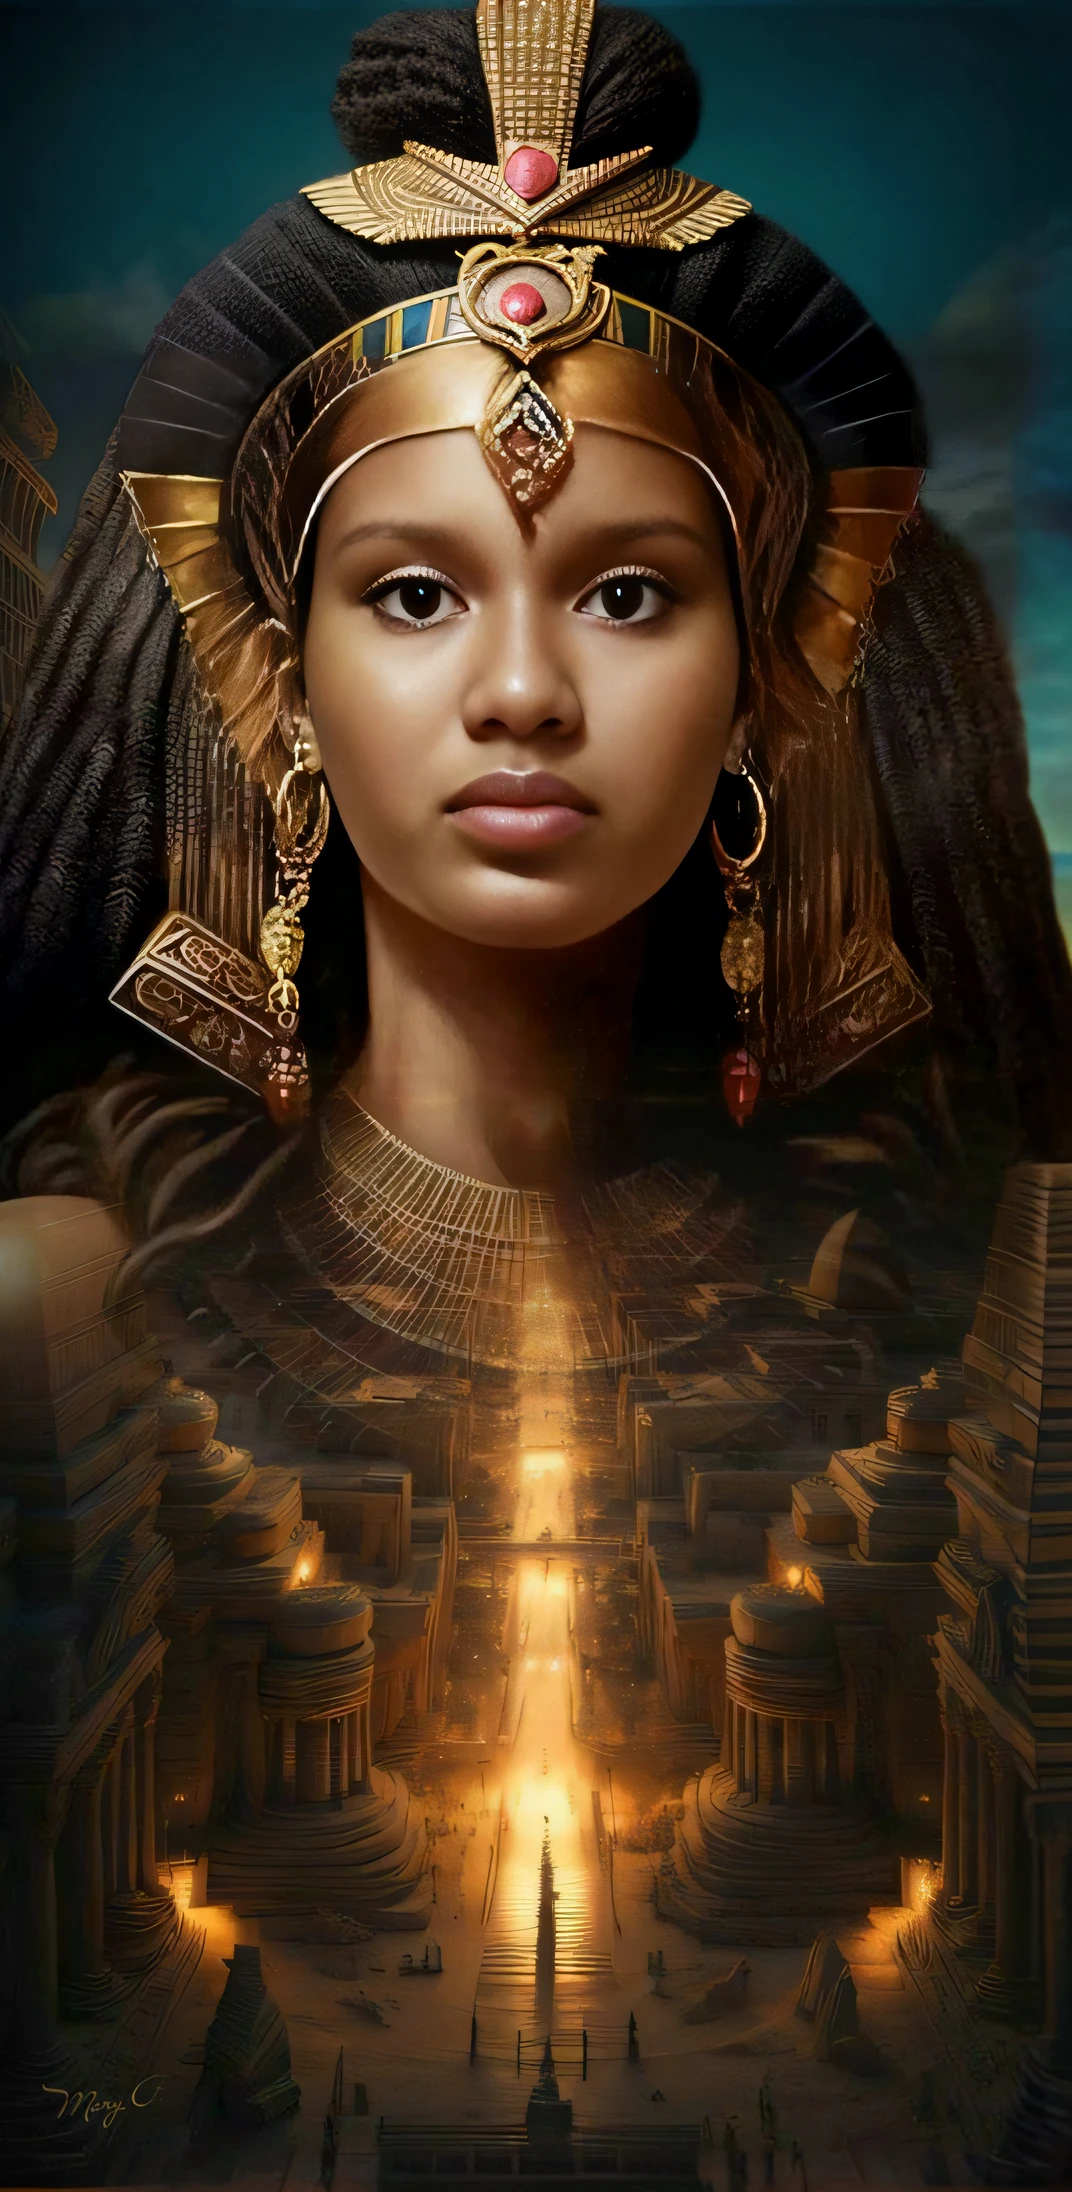 戴著金色頭飾和金色王冠的女人, 令人驚嘆的女神肖像, 古女神, 黑皮膚女愛女神, 凱梅蒂克, 古代公主禮部, 非洲女王, 黑人 艾瑪華森 飾 埃及人, 美麗女神的肖像, 美麗的女神, 女王女神, 埃及公主, 非洲黑公主, 非洲中心主義神秘主義, 女神的肖像